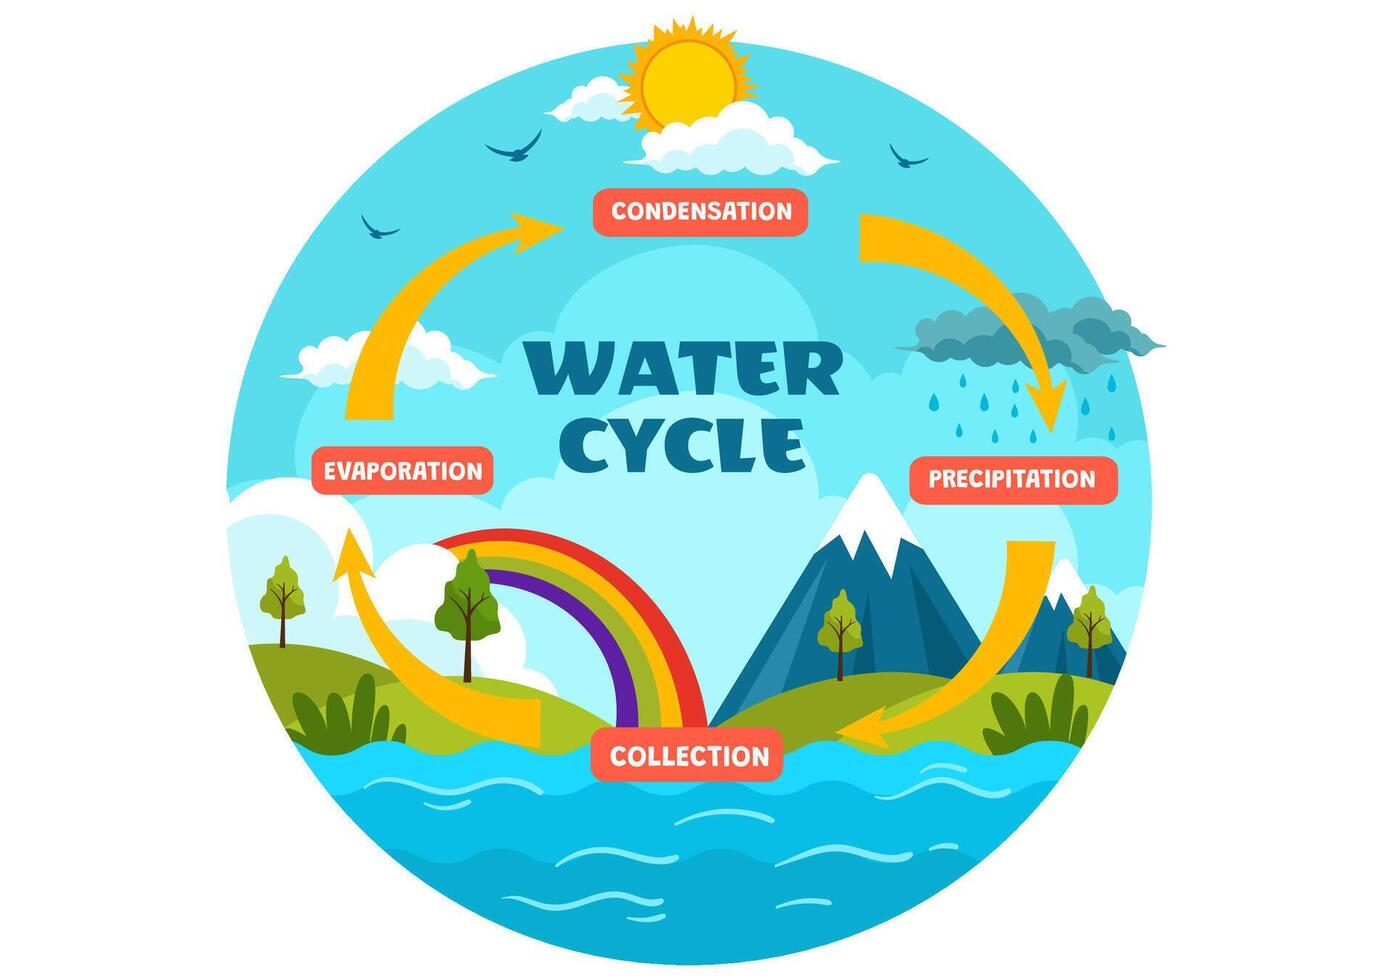 vatten cykel vektor illustration med avdunstning, kondensation, nederbörd till samling i jord naturlig miljö i platt tecknad serie bakgrund